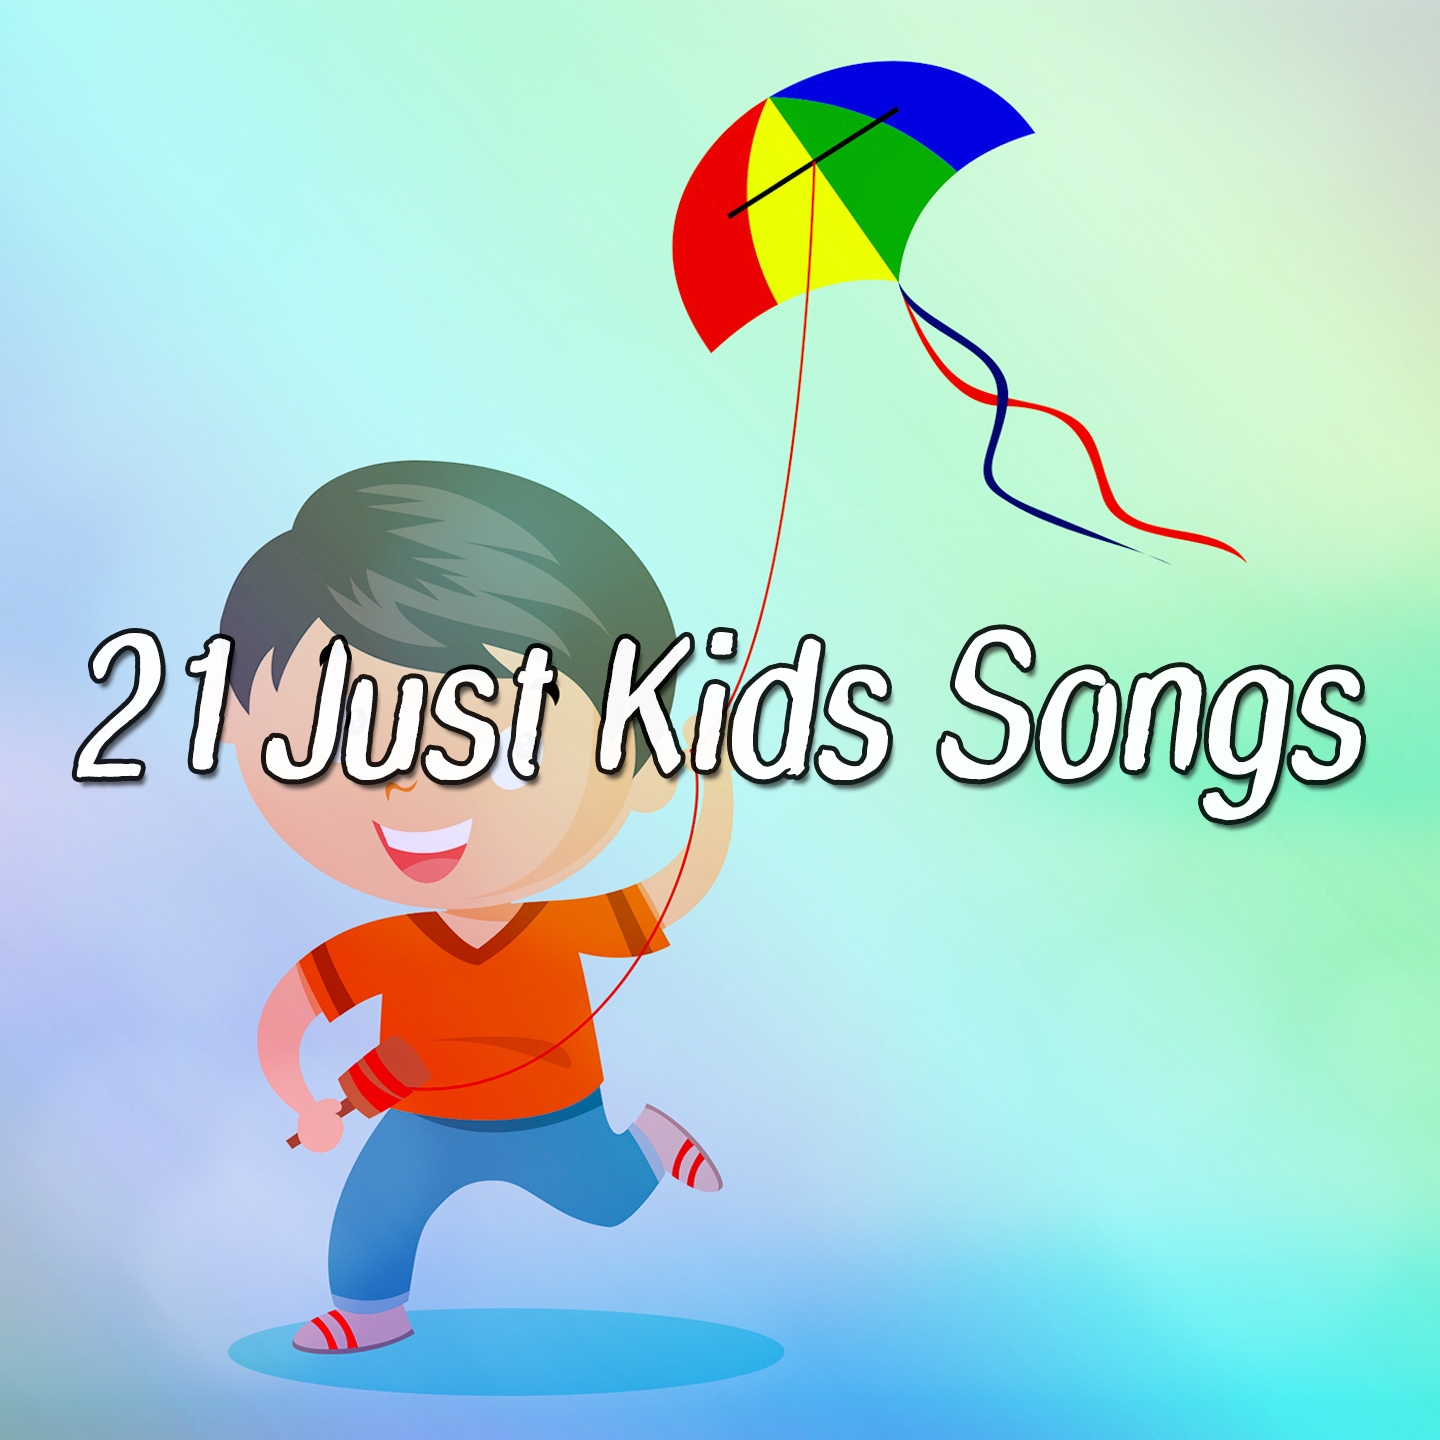 21 Just Kids Songs